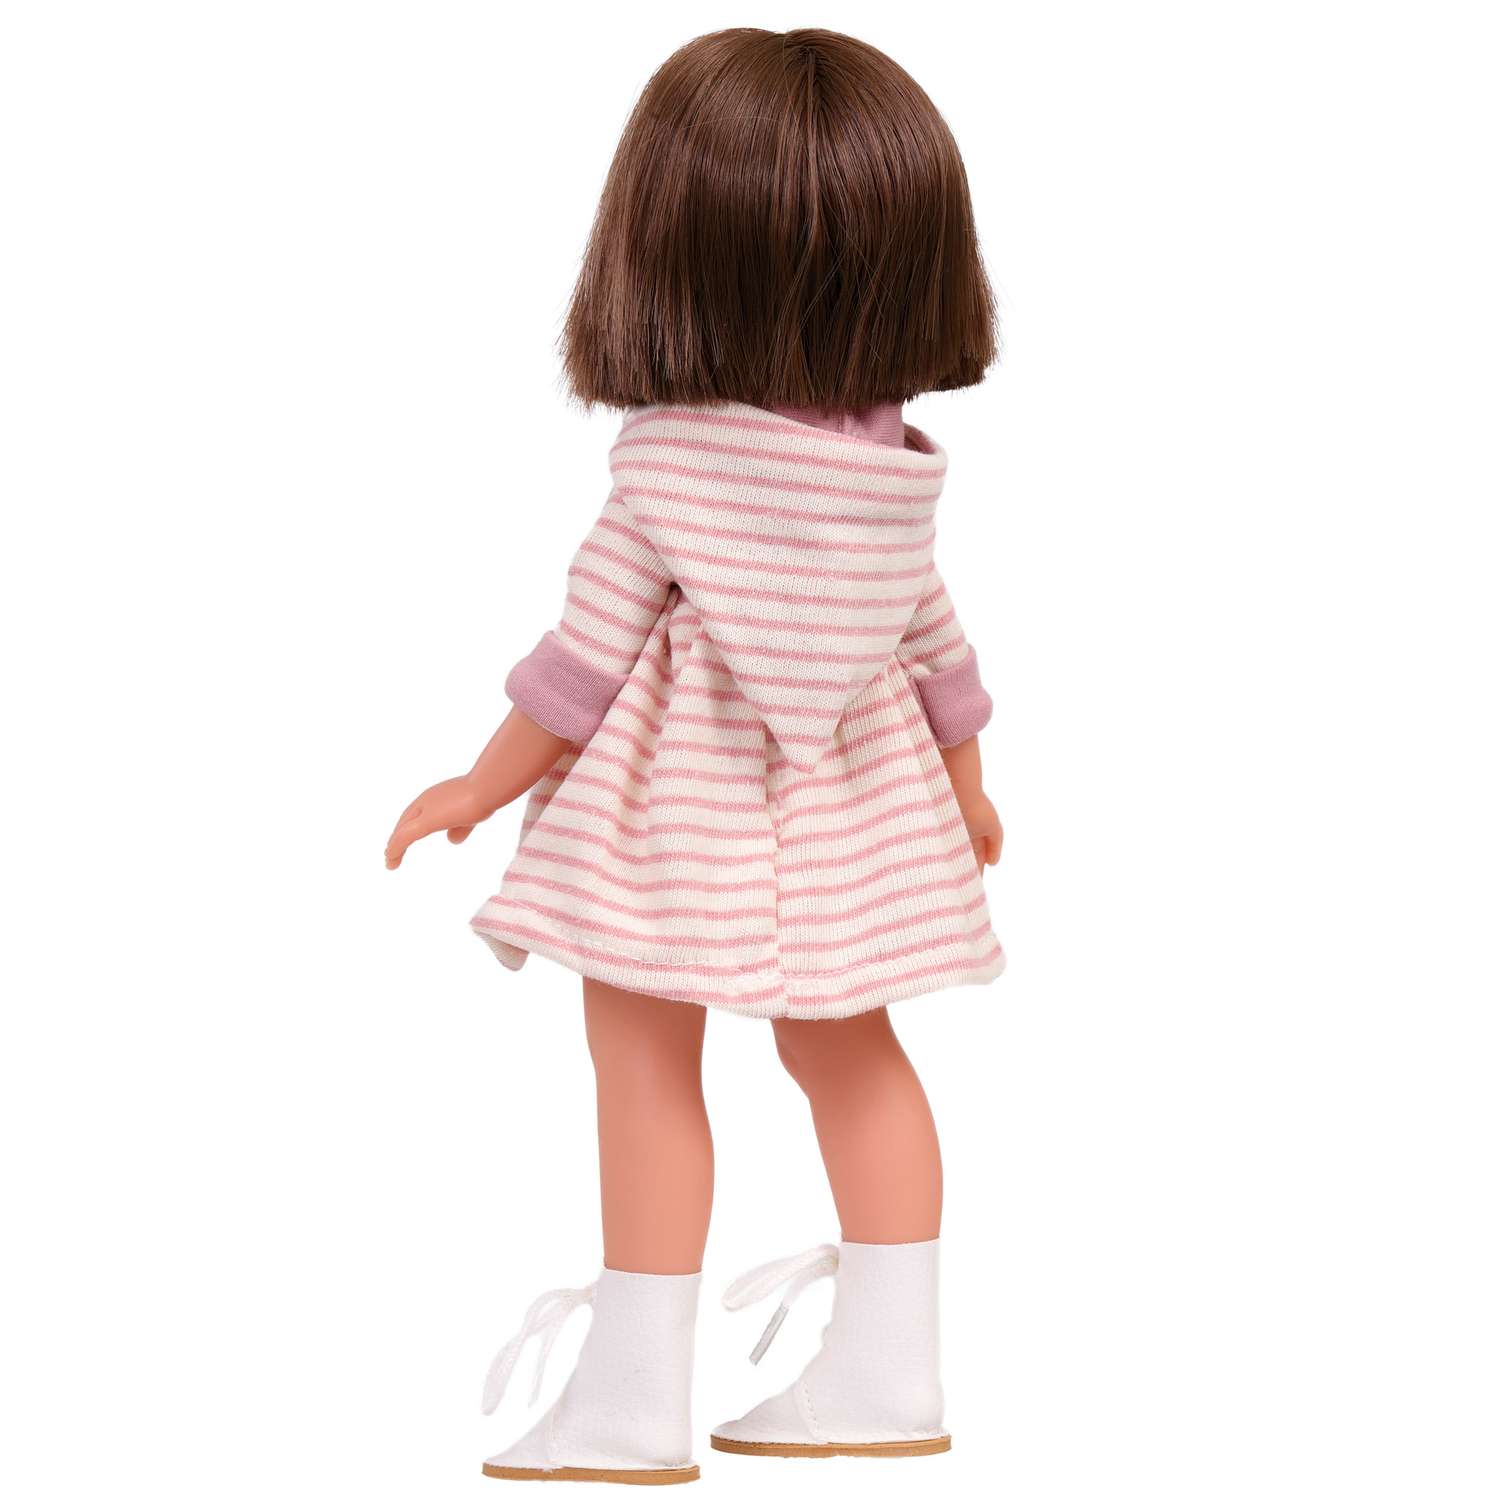 Кукла девочка Antonio Juan Реборн Ноа в платье в полоску 33 см виниловая 25299 - фото 3